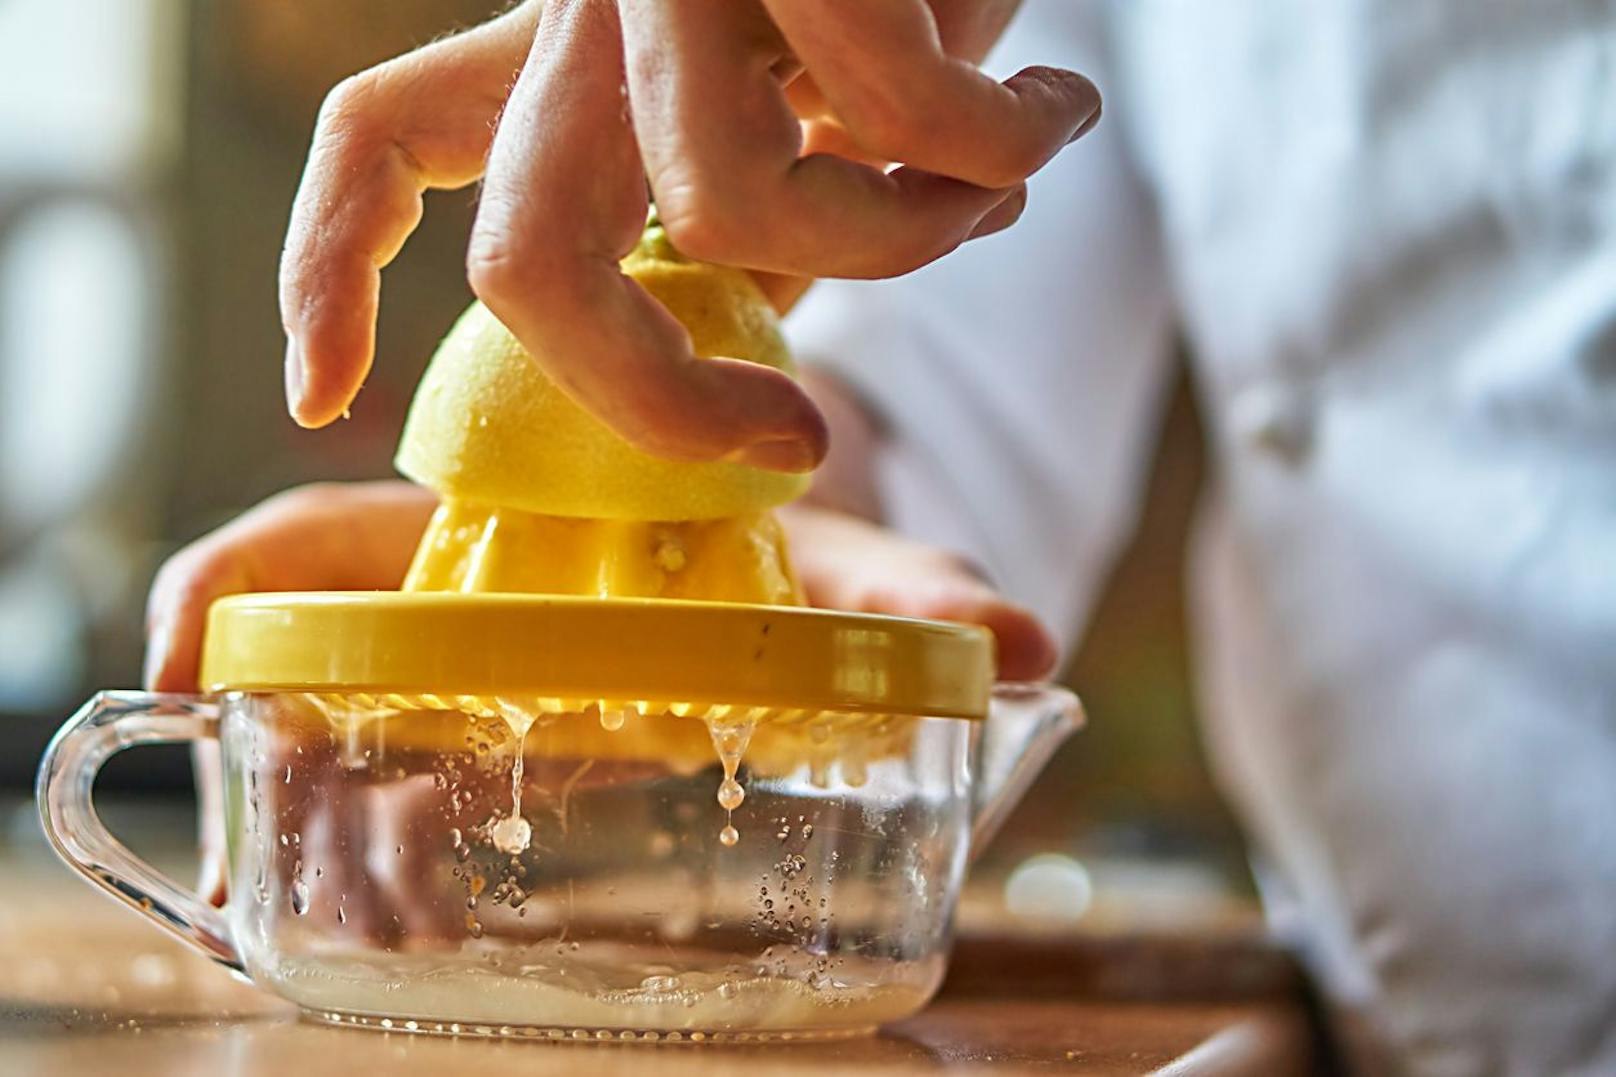 Besorge dir eine Zitrone, denn der Saft der Frucht kann ebenfalls deinen Lack lösen. Presse eine ganze Zitrone aus und vermische den Saft mit warmem Wasser. Die Menge des Wassers sollte etwa die Hälfte einer kleinen Schüssel betragen. 